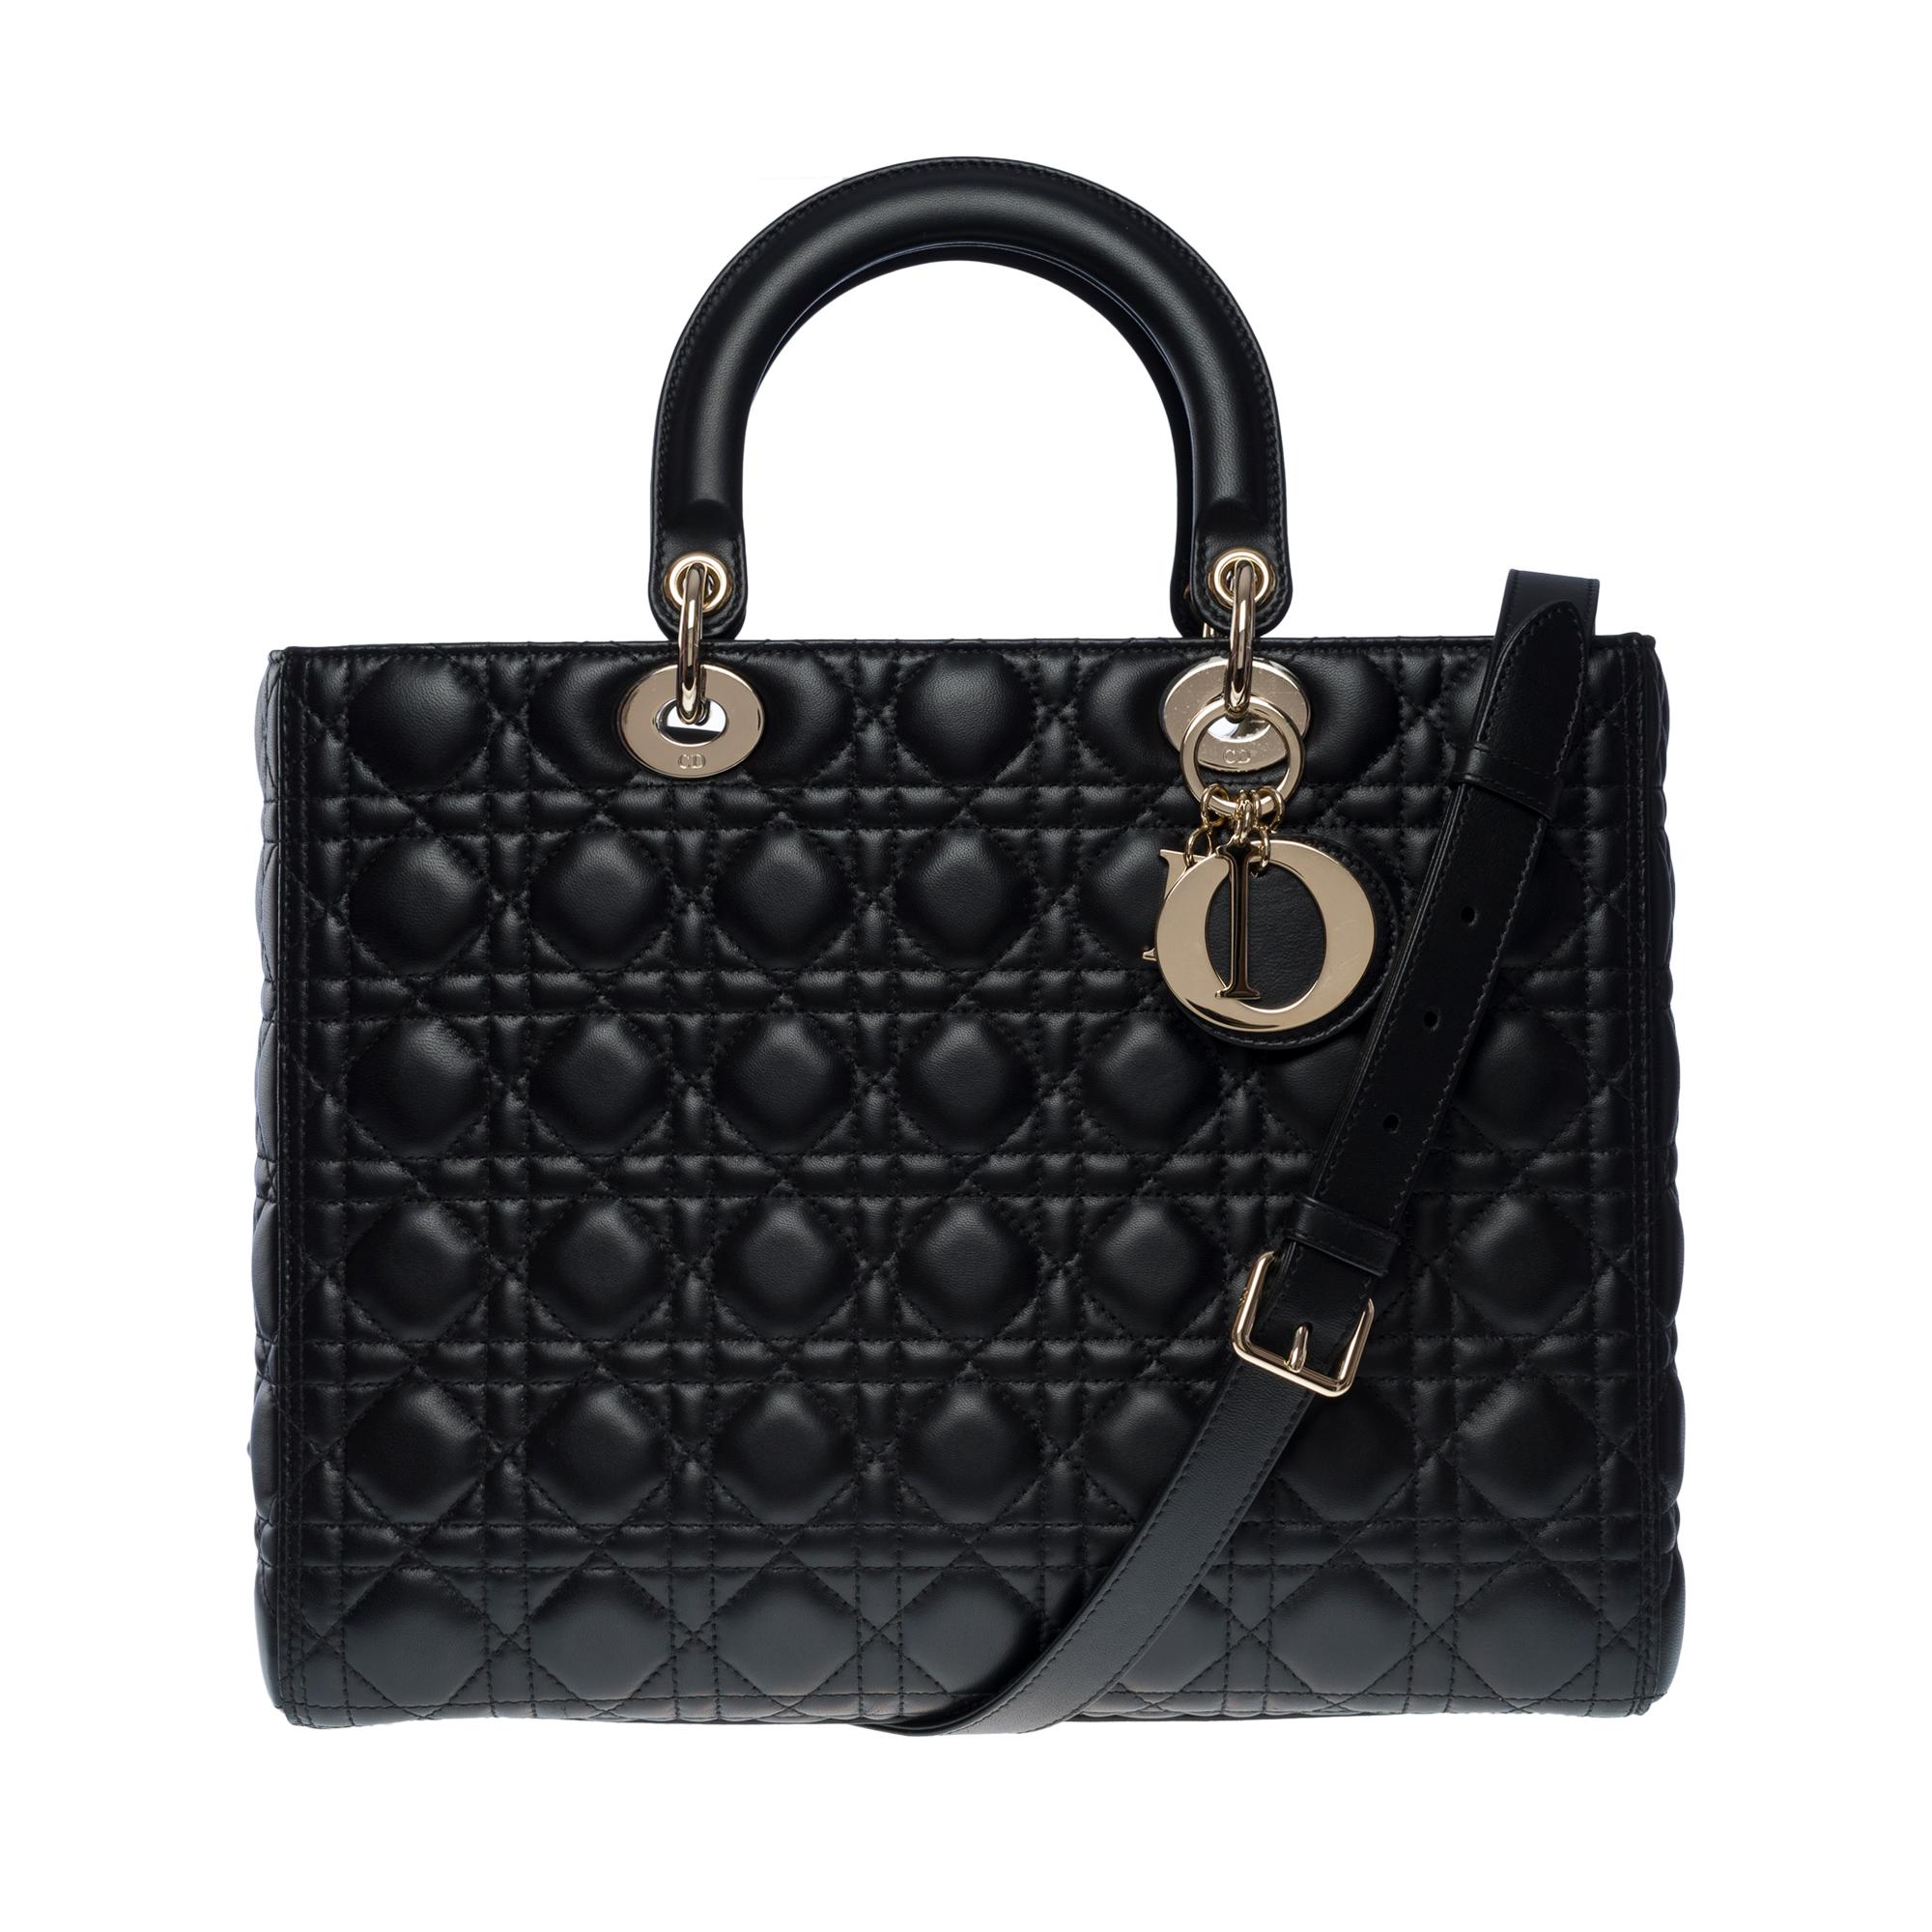 Superbe sac à main Lady Dior Grand Model (GM) en cuir cannage noir, quincaillerie en métal argenté, double poignée en cuir noir, bandoulière amovible en cuir noir pour porter à la main, à l'épaule ou en bandoulière.

Une fermeture par rabat
Doublure